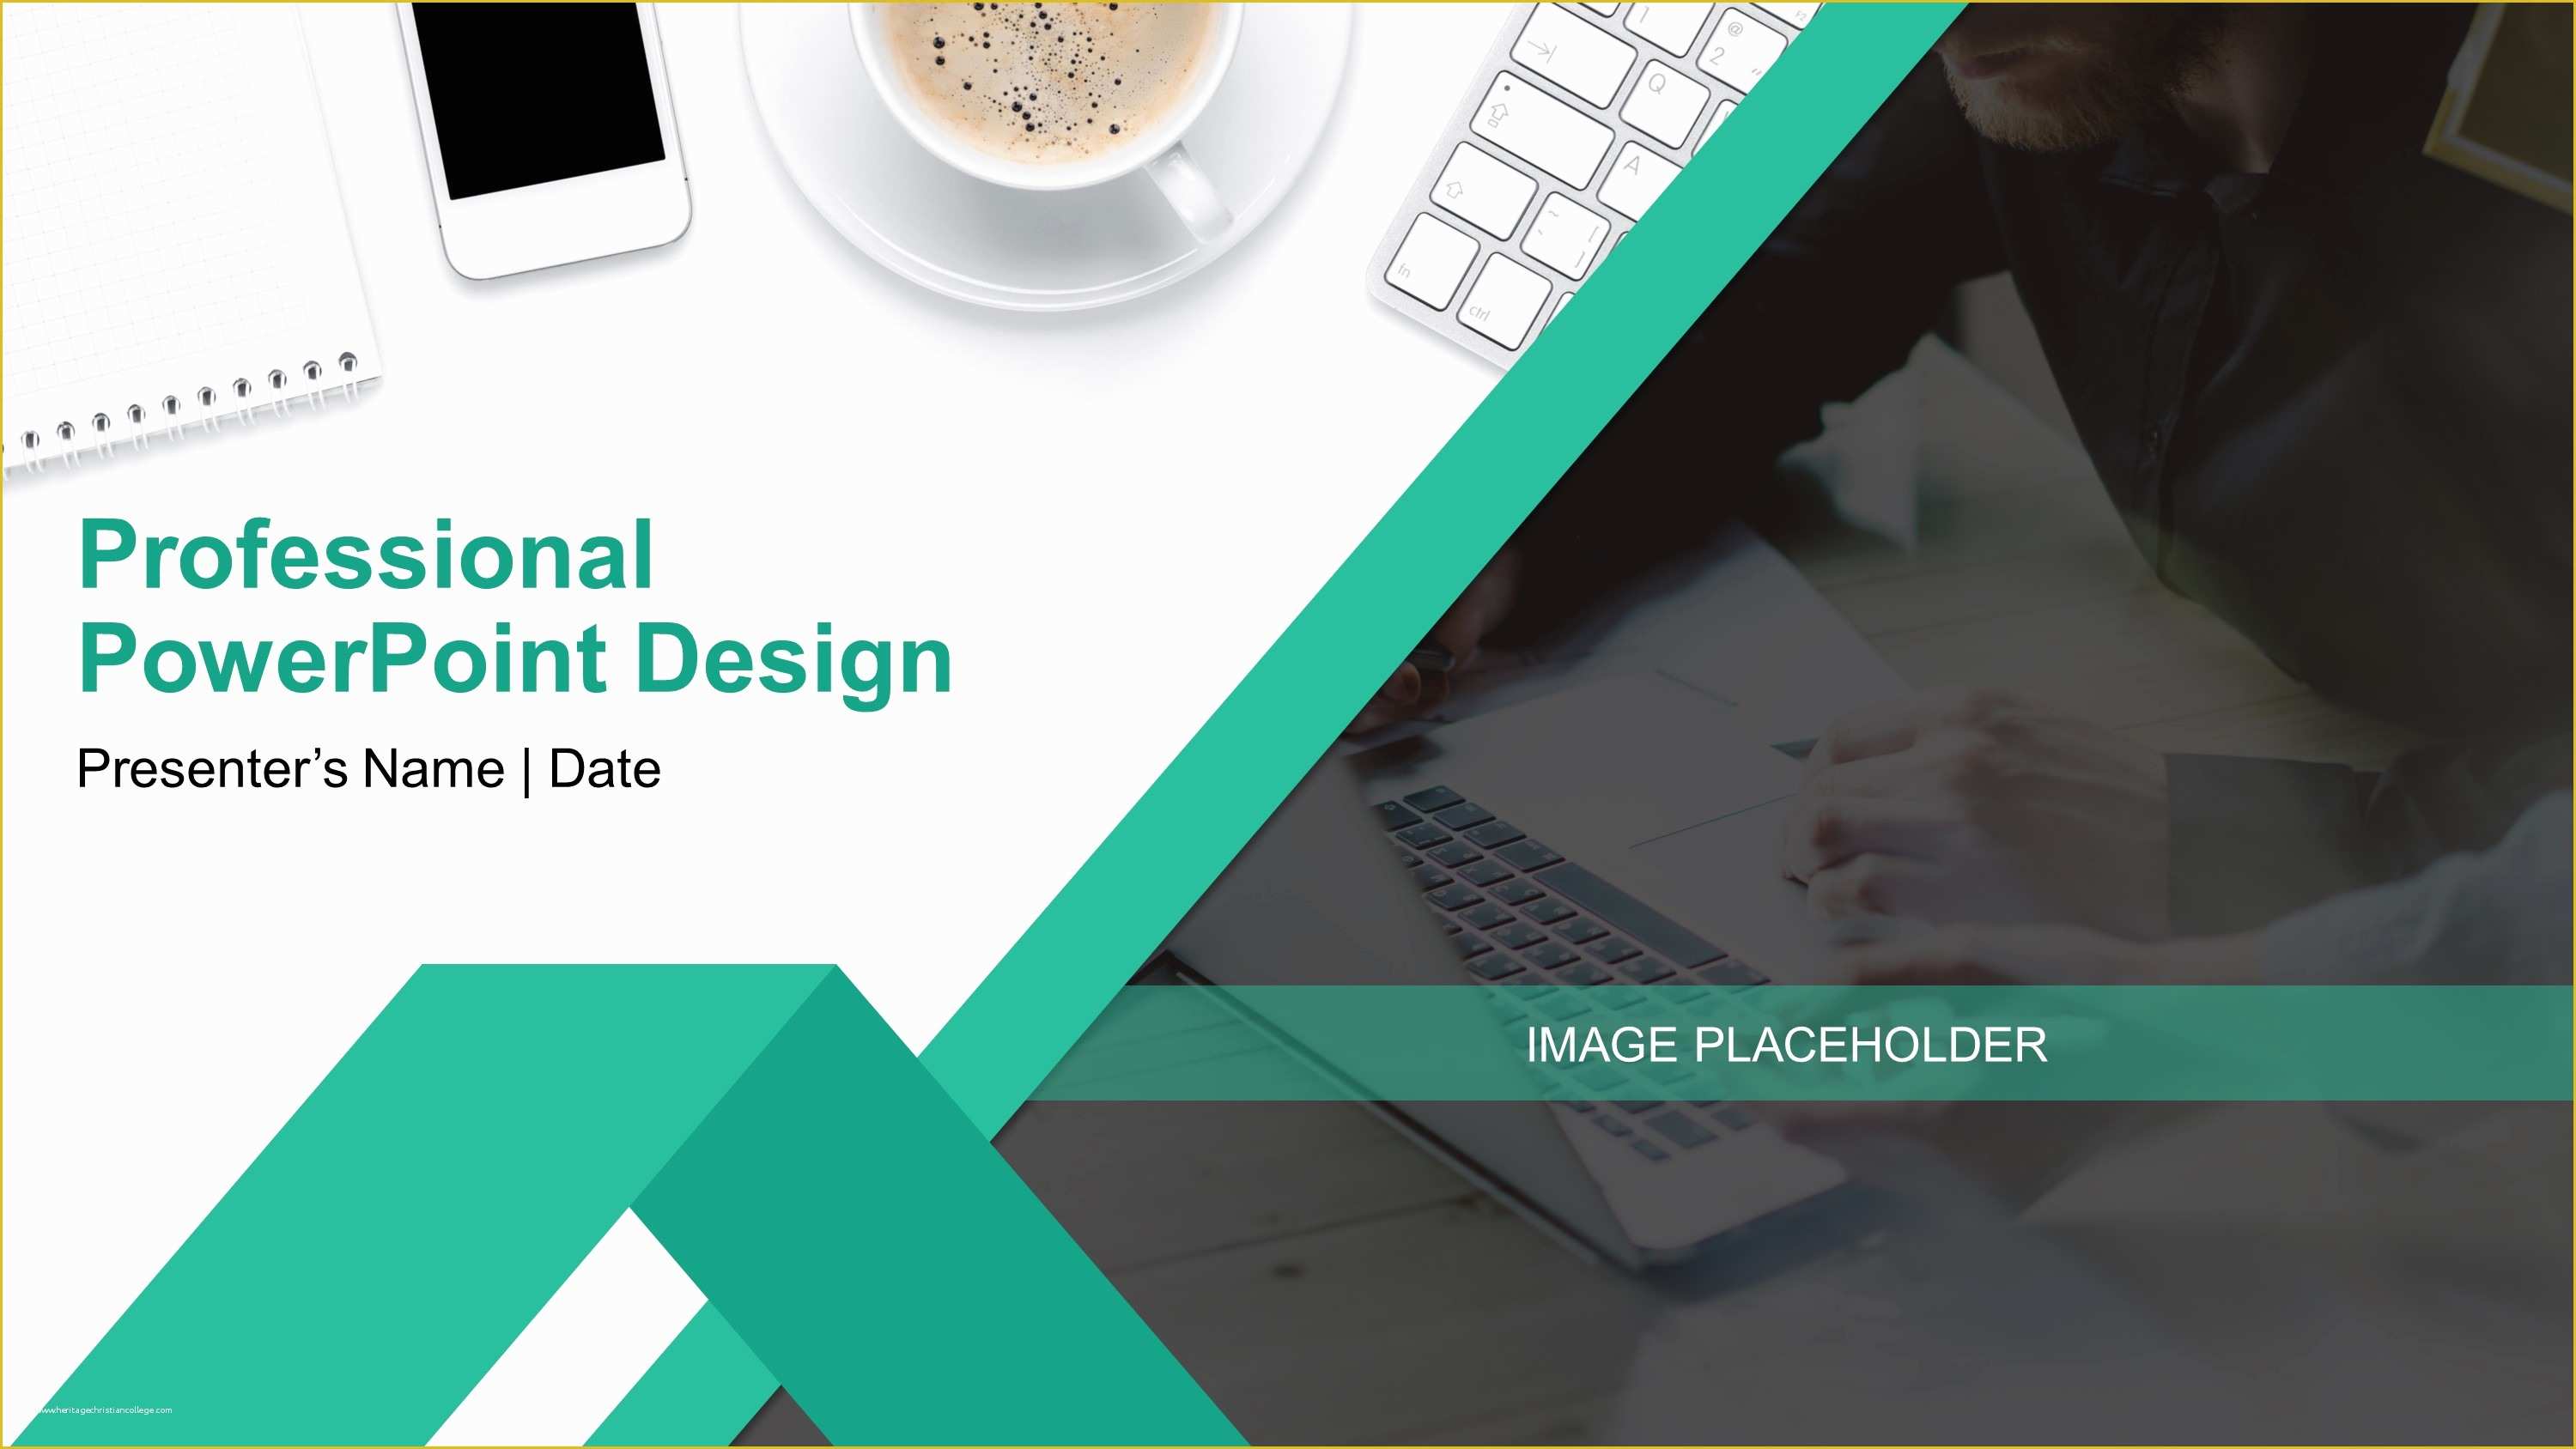 powerpoint design ideas office 2019